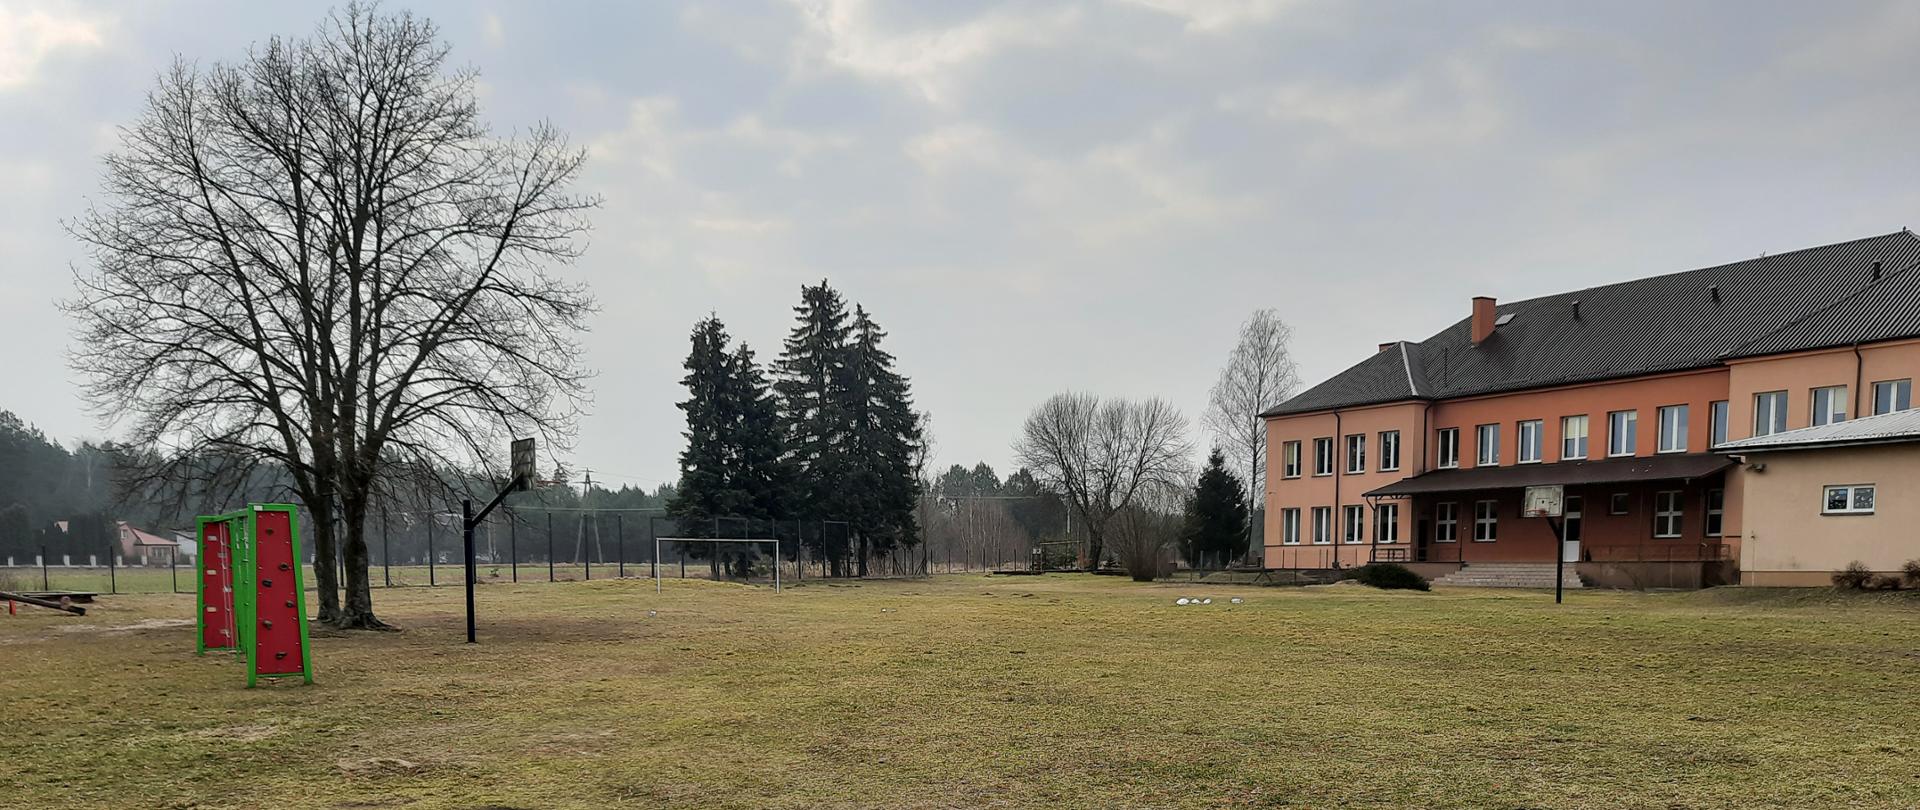 Naturalna nawierzchnia boiska, w oddali bramka, ogrodzenie, las. Po prawej stronie znajduje się budynek szkoły z pomarańczową elewacją.